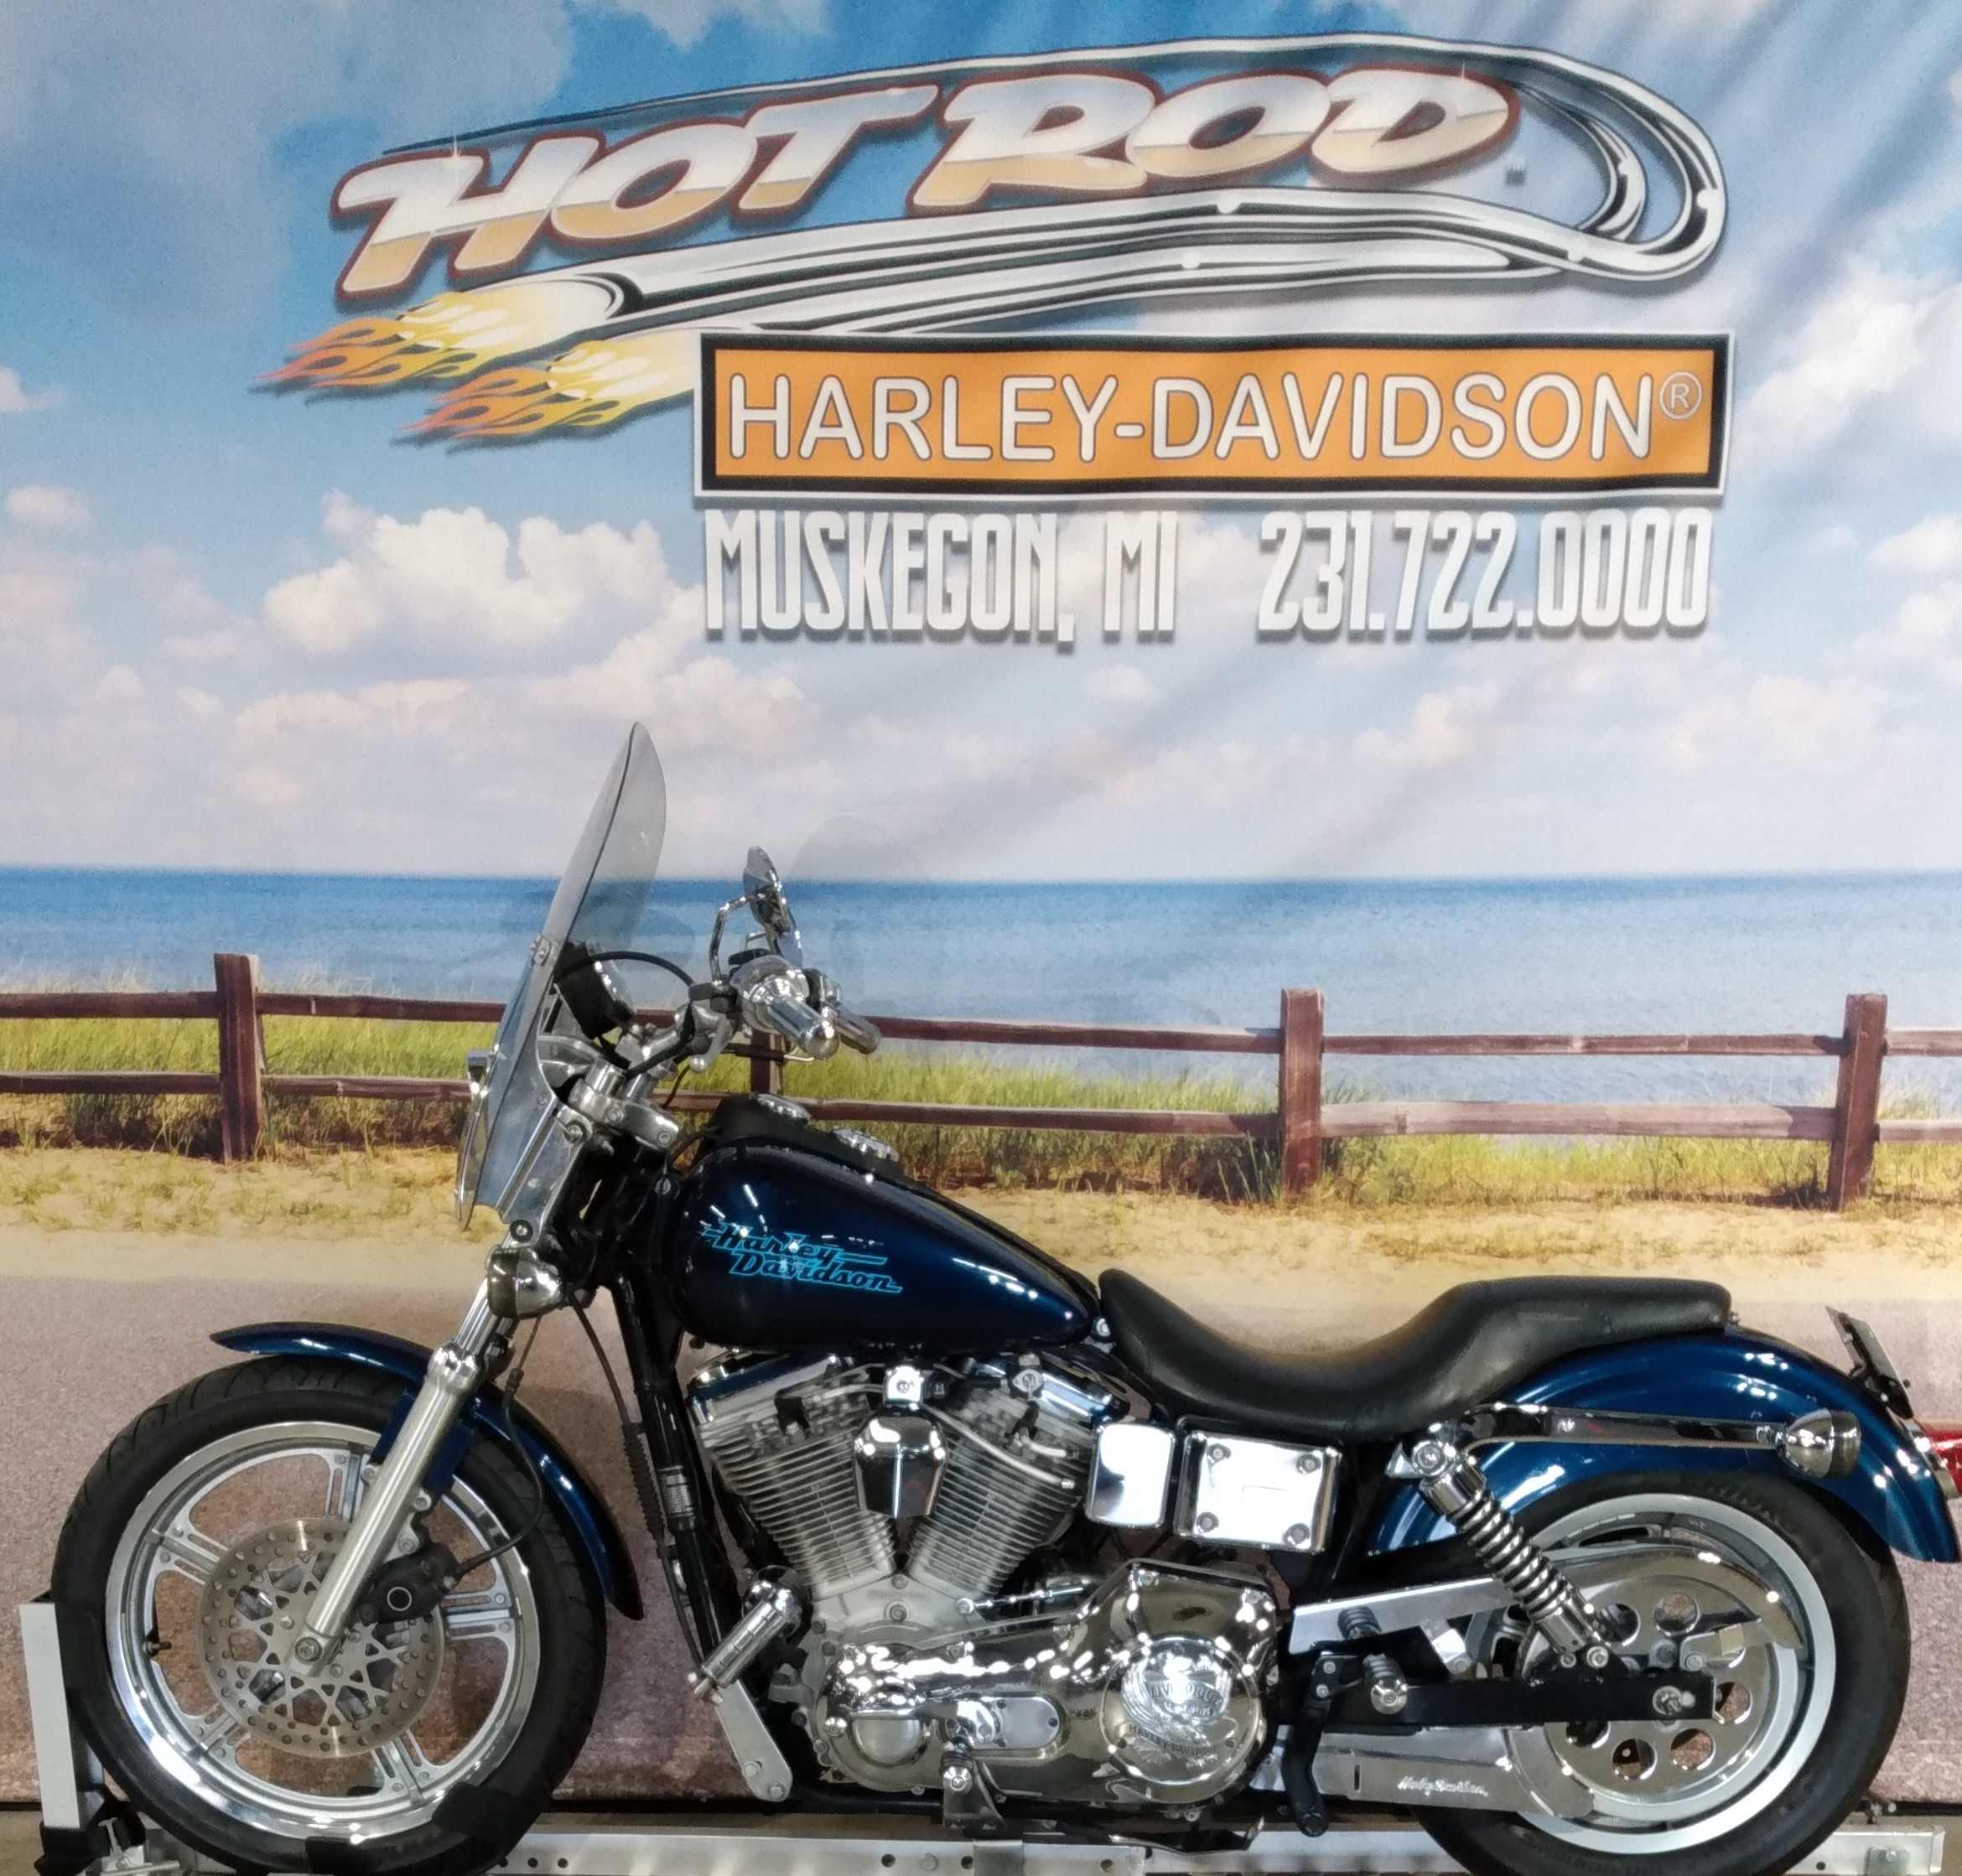 1998 Harley-Davidson FXD DYNA at Hot Rod Harley-Davidson